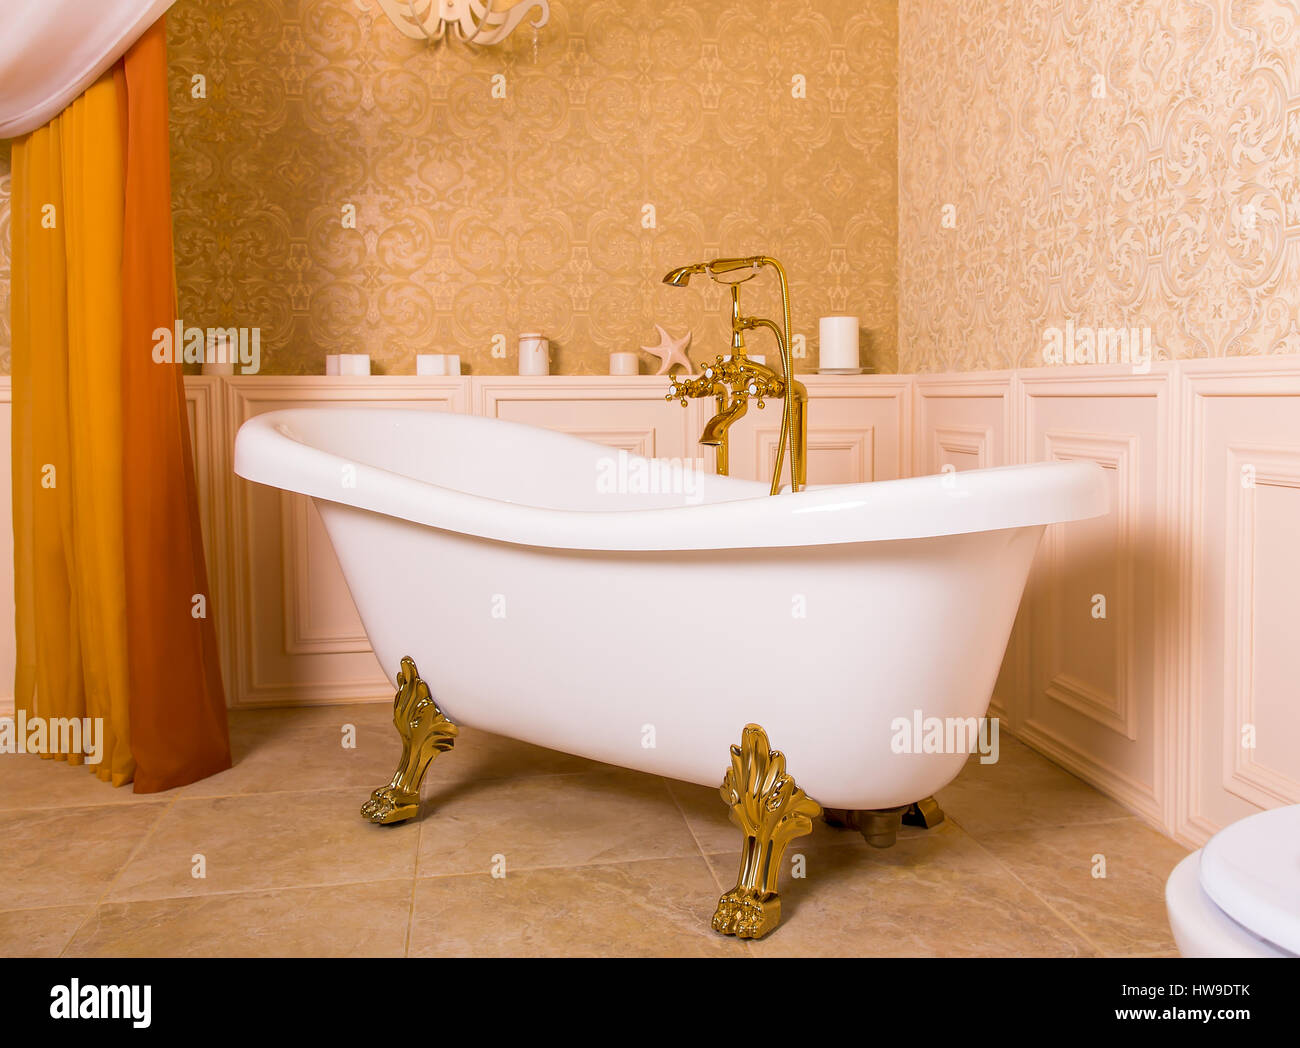 Baignoire riche à roll-top dans la forme de pattes d'animaux et d'or  robinet de la salle de bain. Les équipements sanitaires de luxe Photo Stock  - Alamy